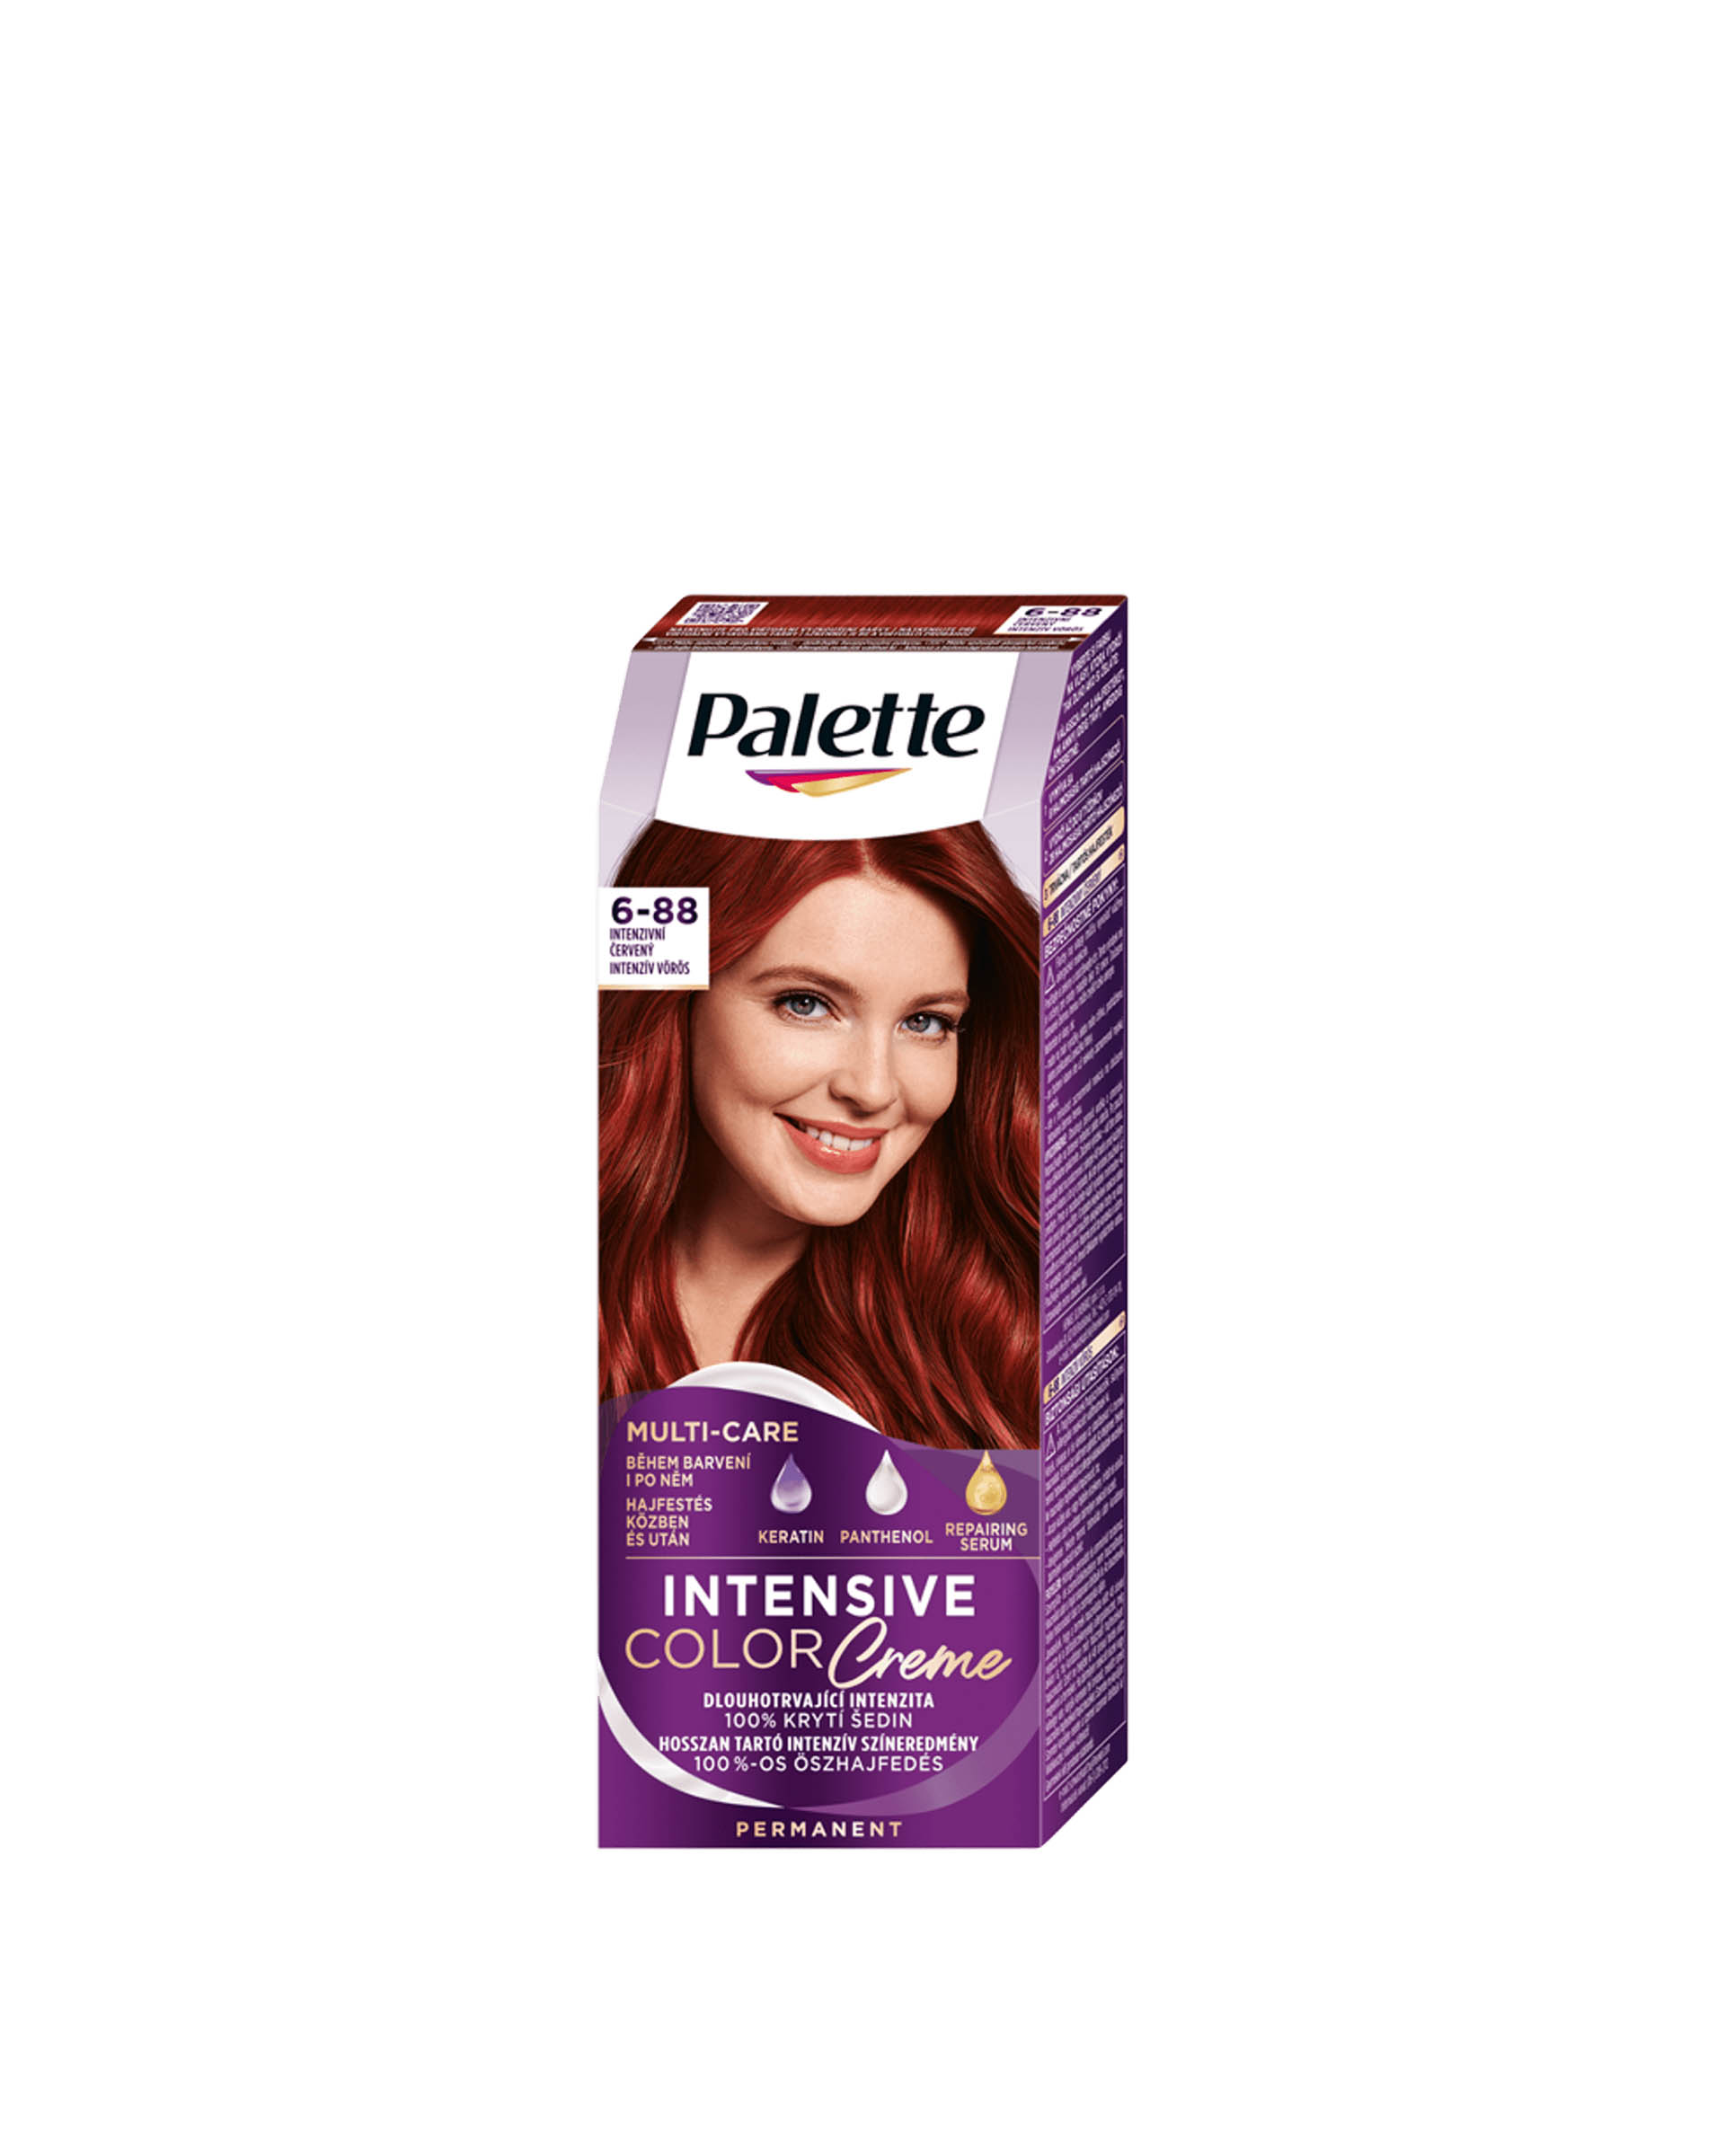 Palette Intensive Color Creme Permanent Hair Color 6-88 ri5 intensive ...